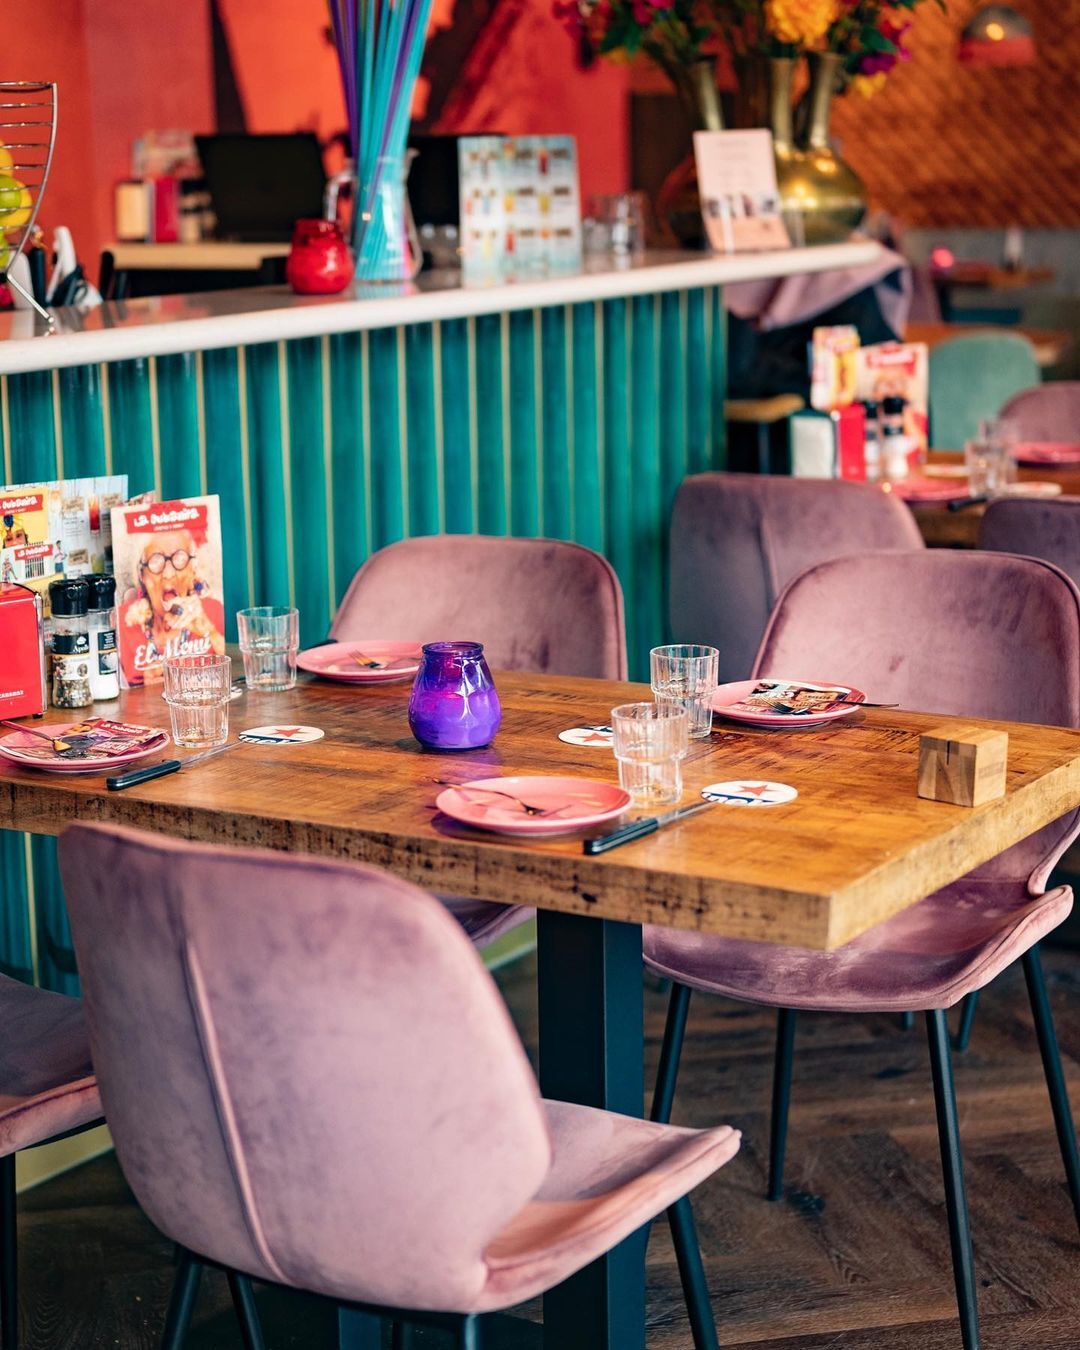 JOEHOEEEEE! 💃🏼

Voor wie staat deze tafel klaar?! 😍
Samen lekker een avondje onbeperkt tapas! ✨

Reserveren kan via www.lacubanita.nl! 

#lacubanita #cuba #onbeperkttapas #tapasymas #sangria #cocktails #lekkereten #lavidaesuncarnaval